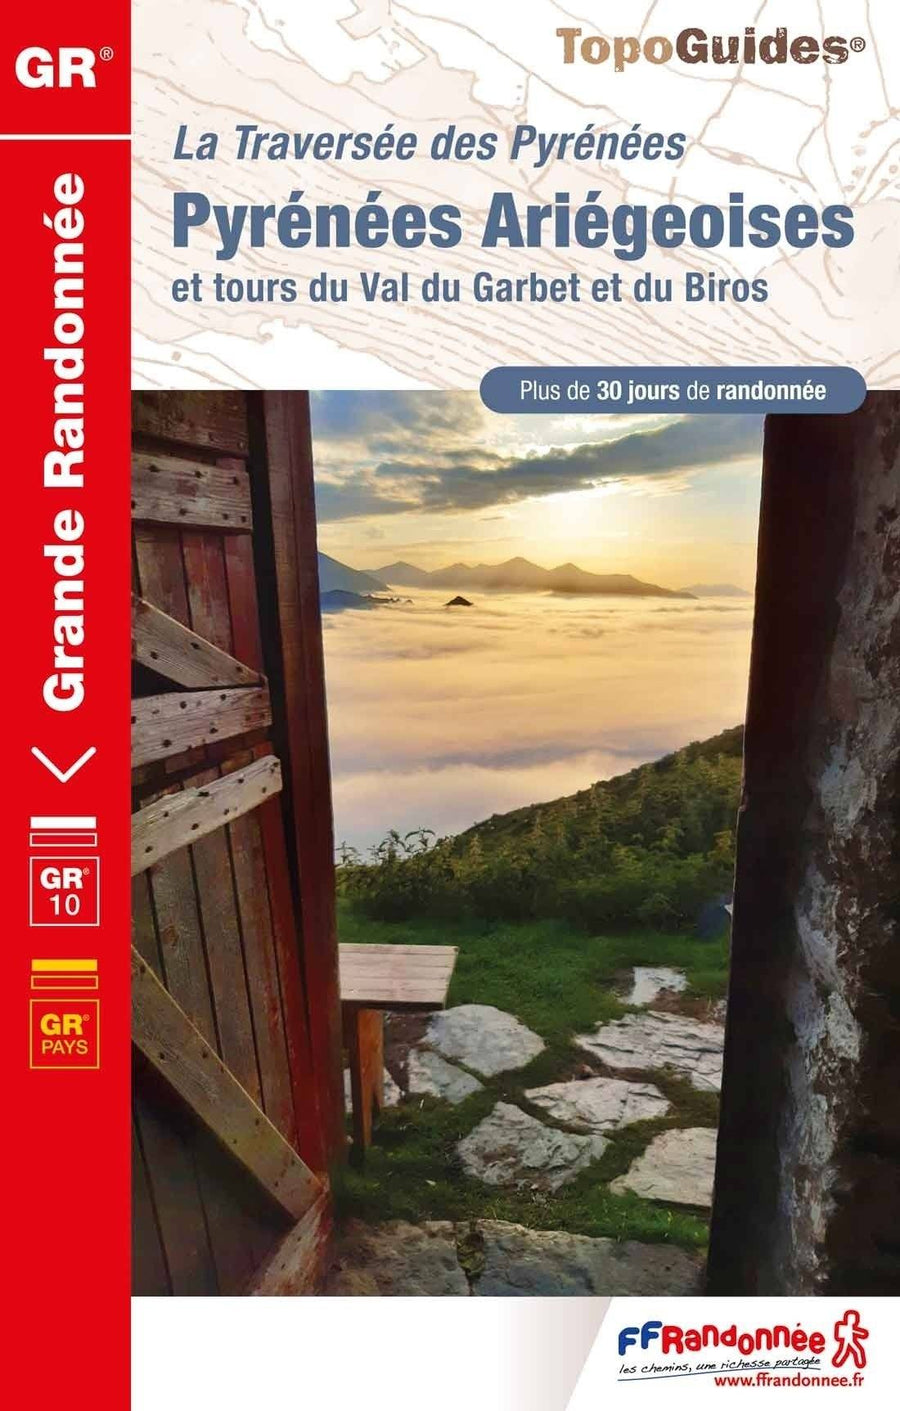 Topoguide de randonnée - La traversée des Pyrénées Ariégeoises - GR10 | FFR guide de randonnée FFR - Fédération Française de Randonnée 